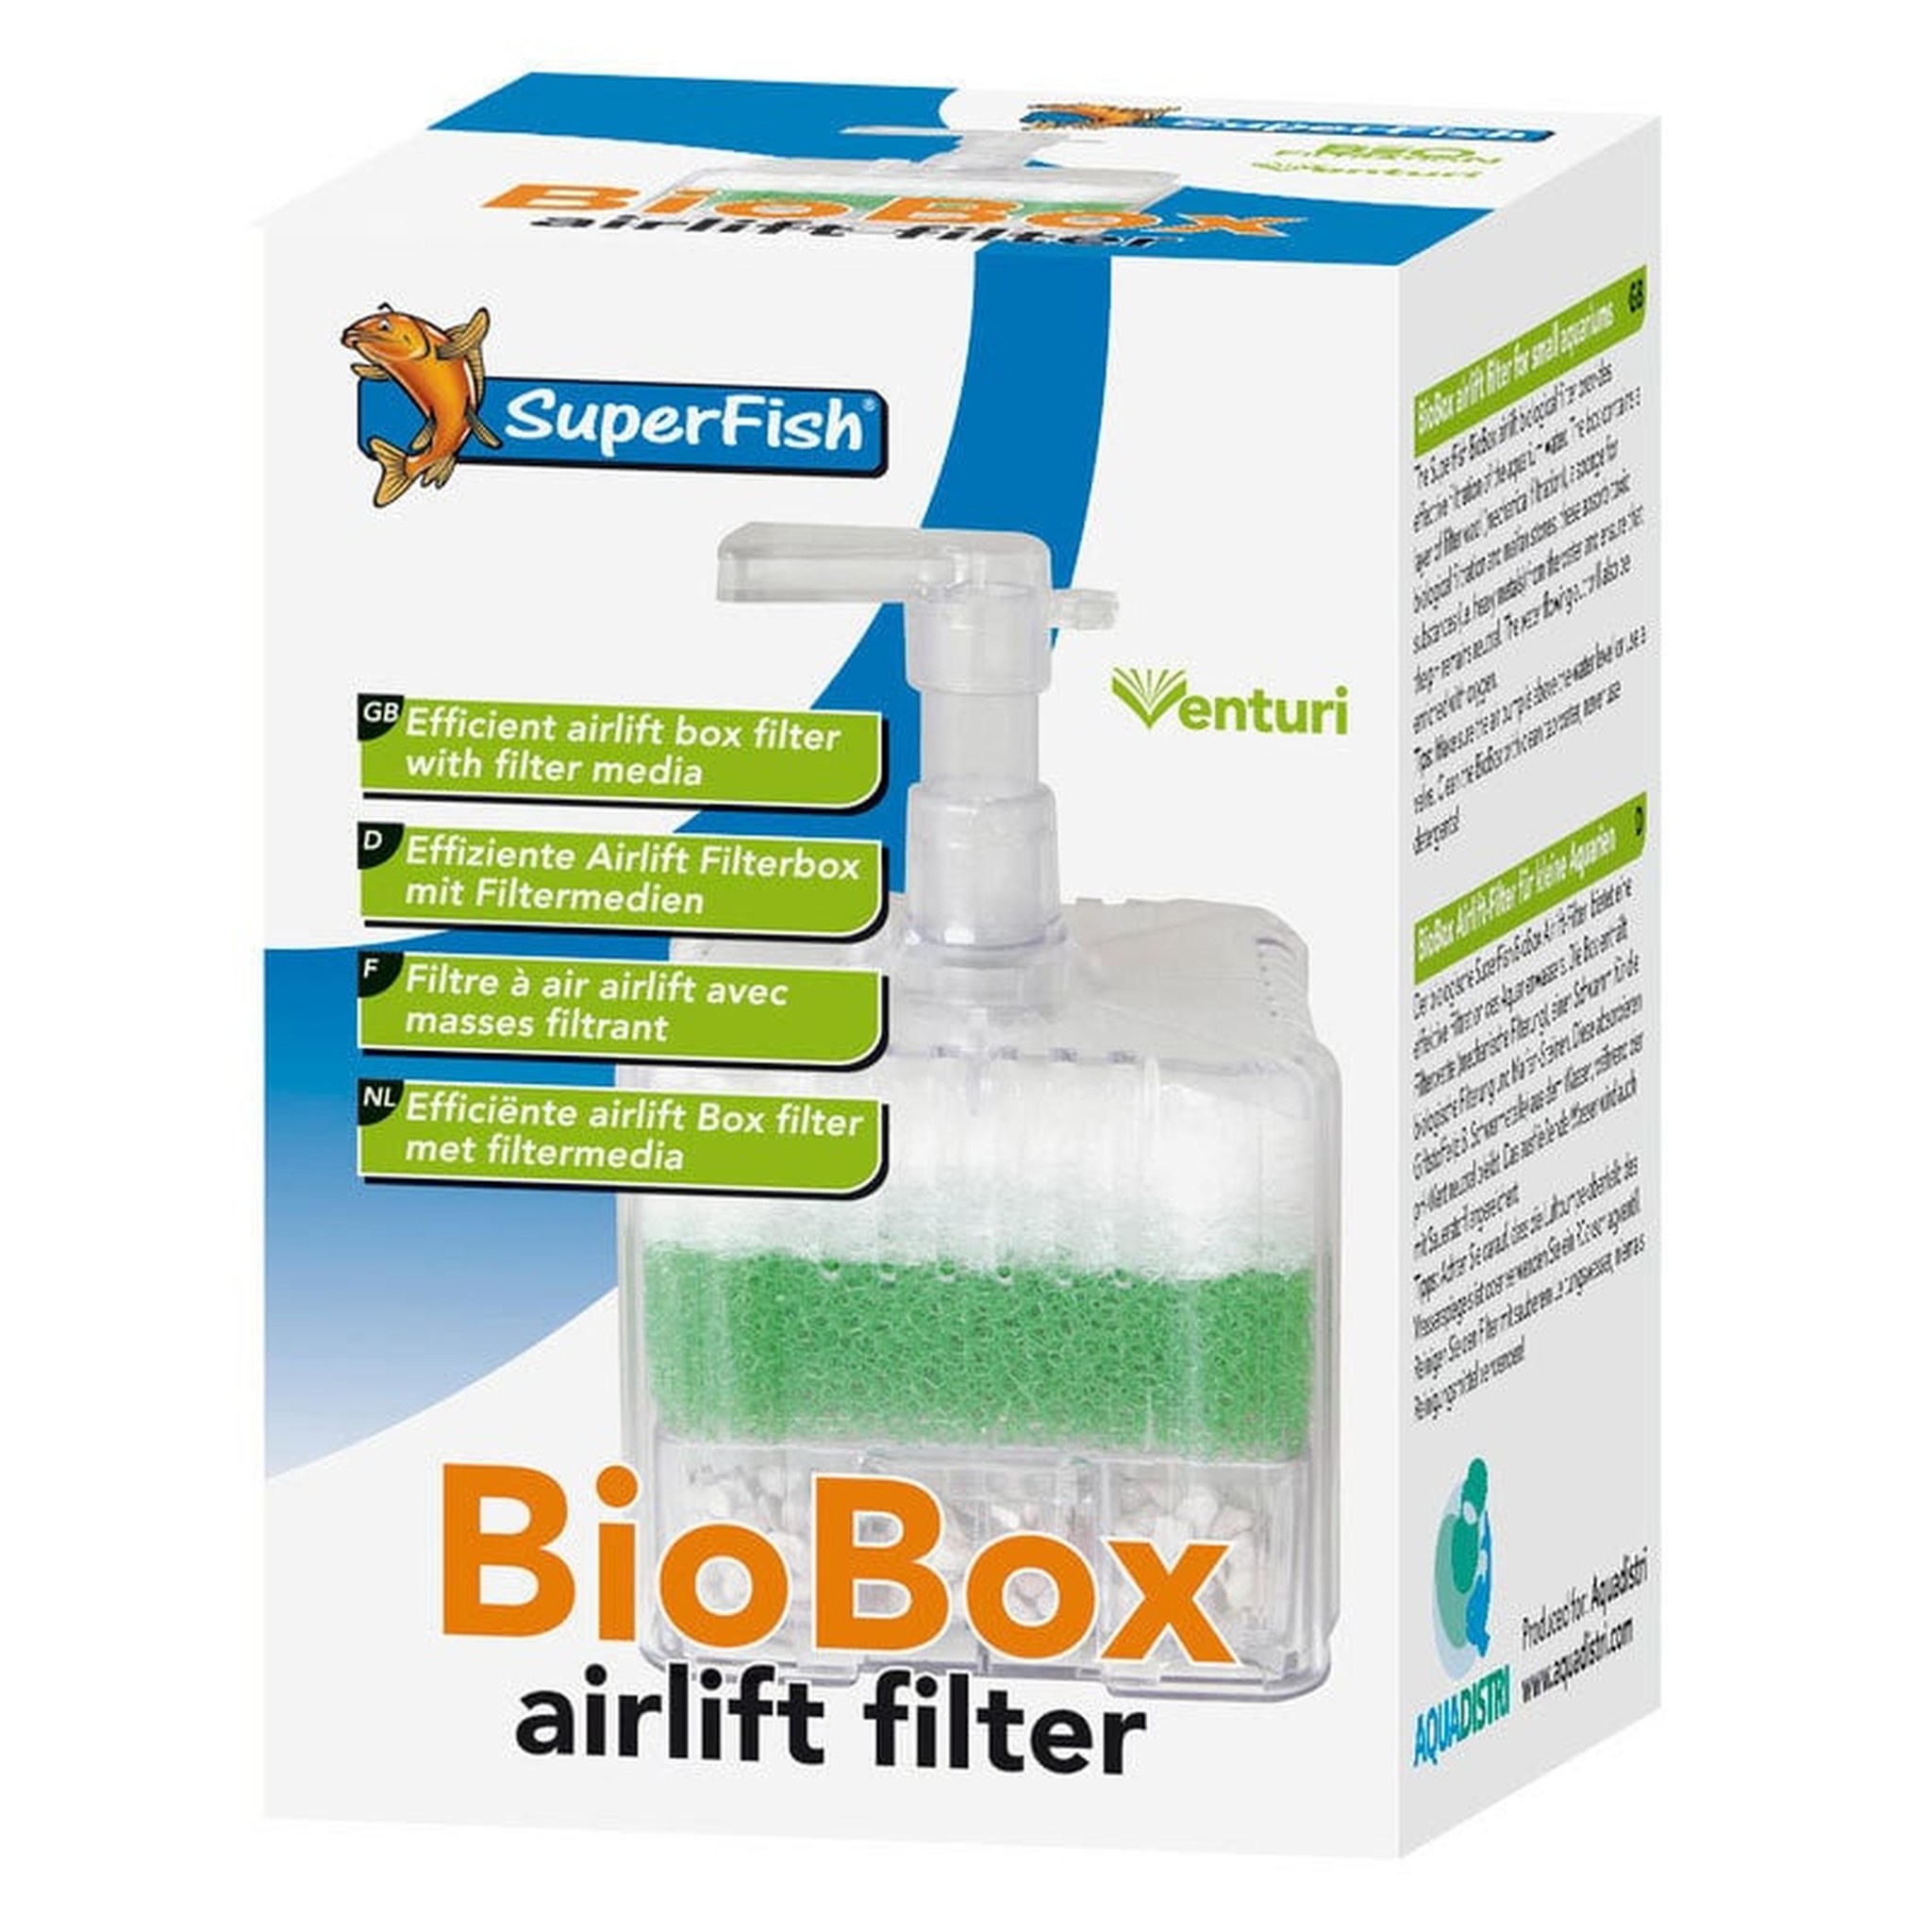 superfish-biobox-airlift-filter-superfish.jpg